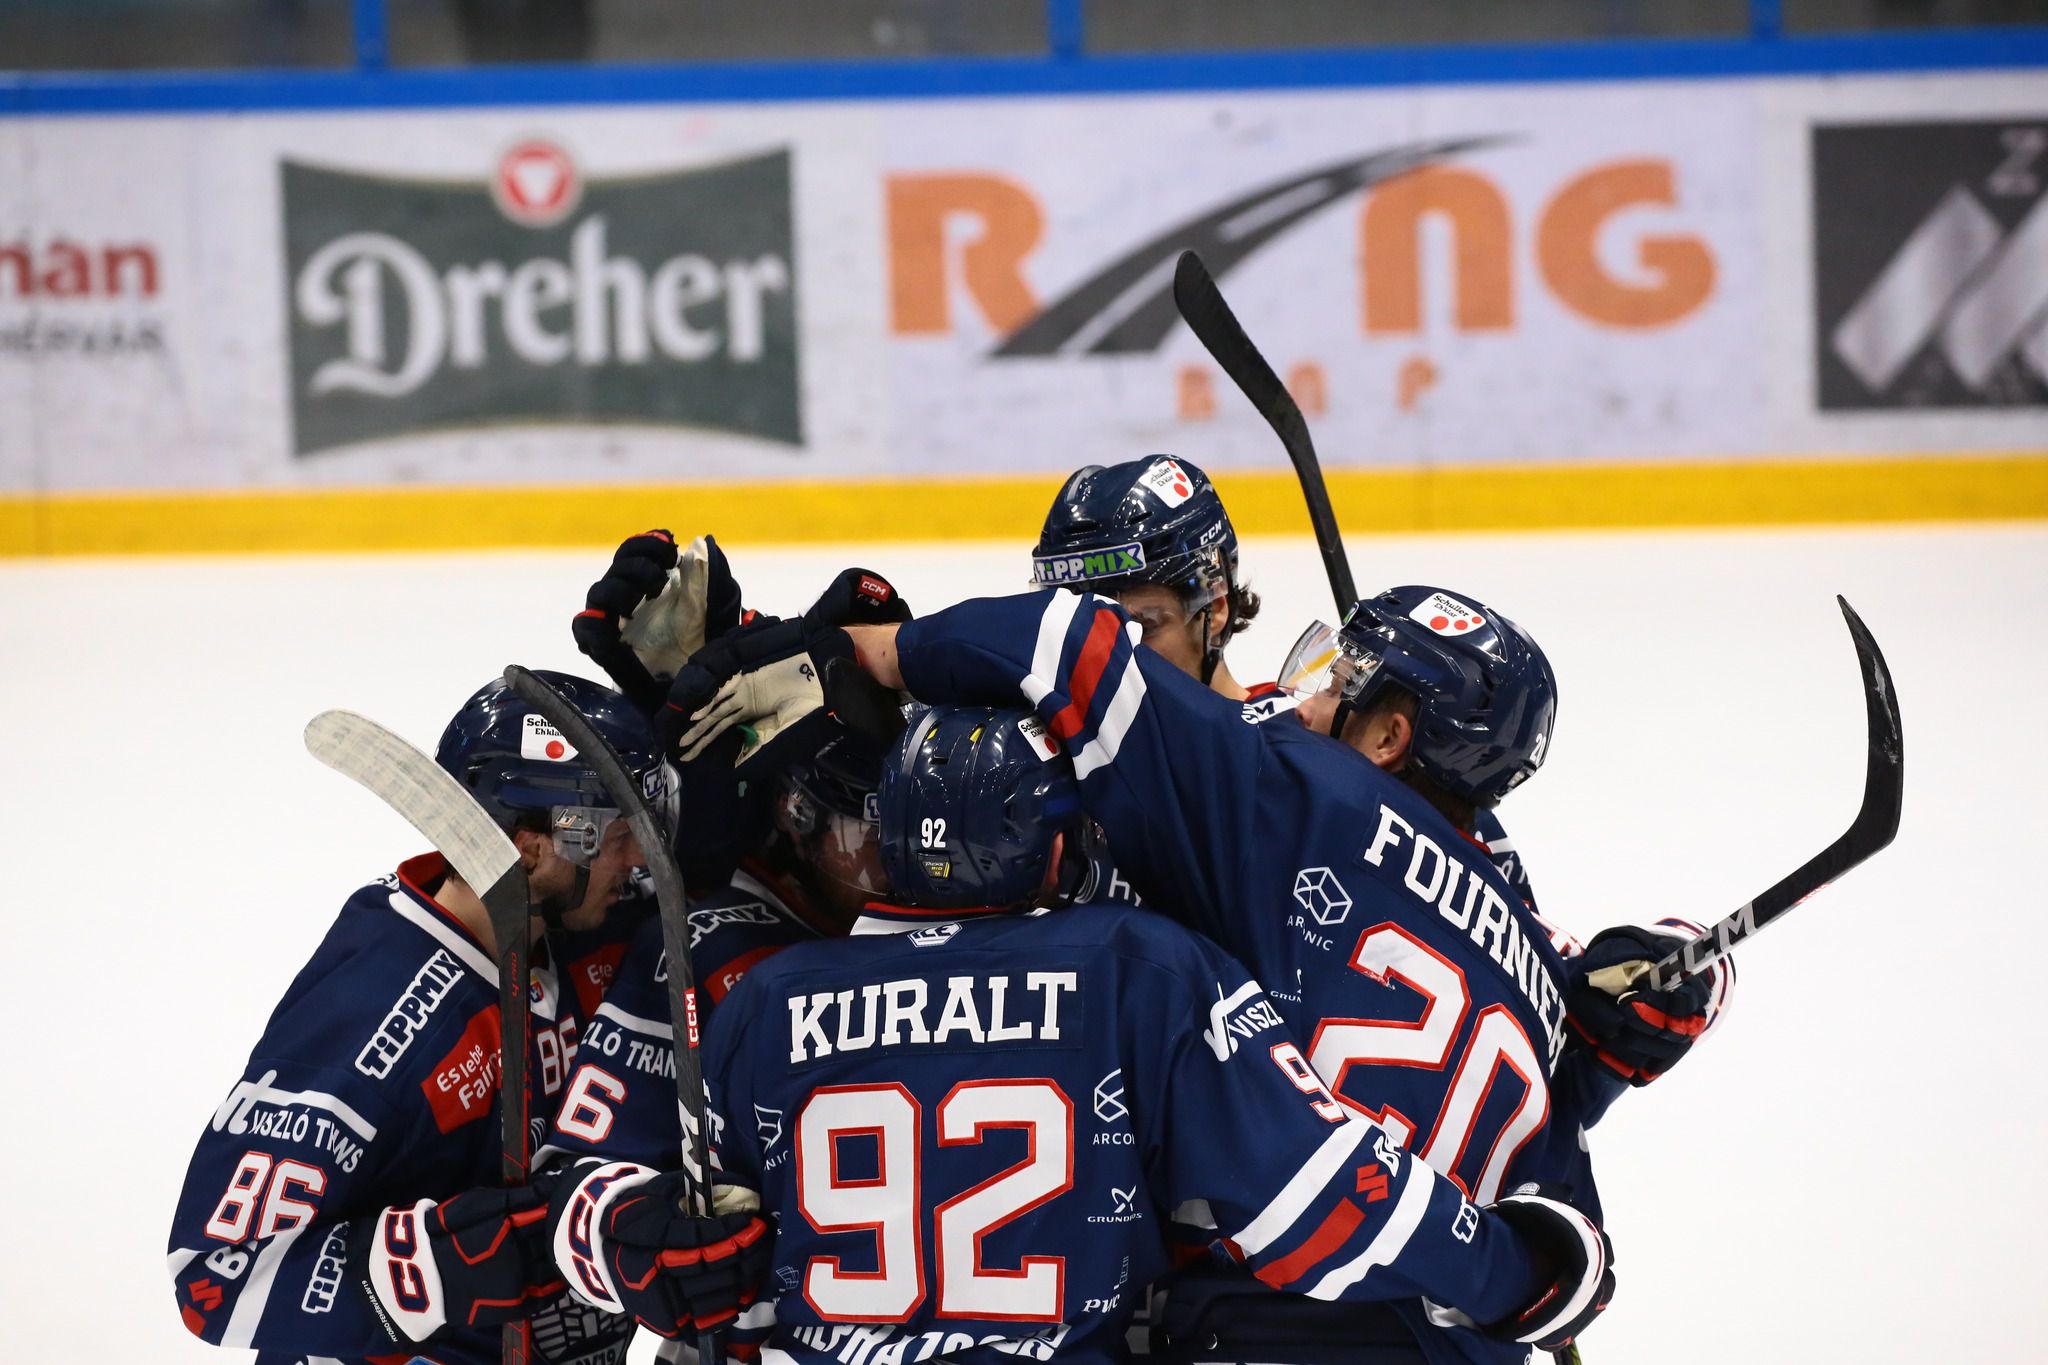 Bécsben a Fehérvár jégkorongcsapata, DVTK–UTE meccs a bajnokságban – pénteki sportműsor